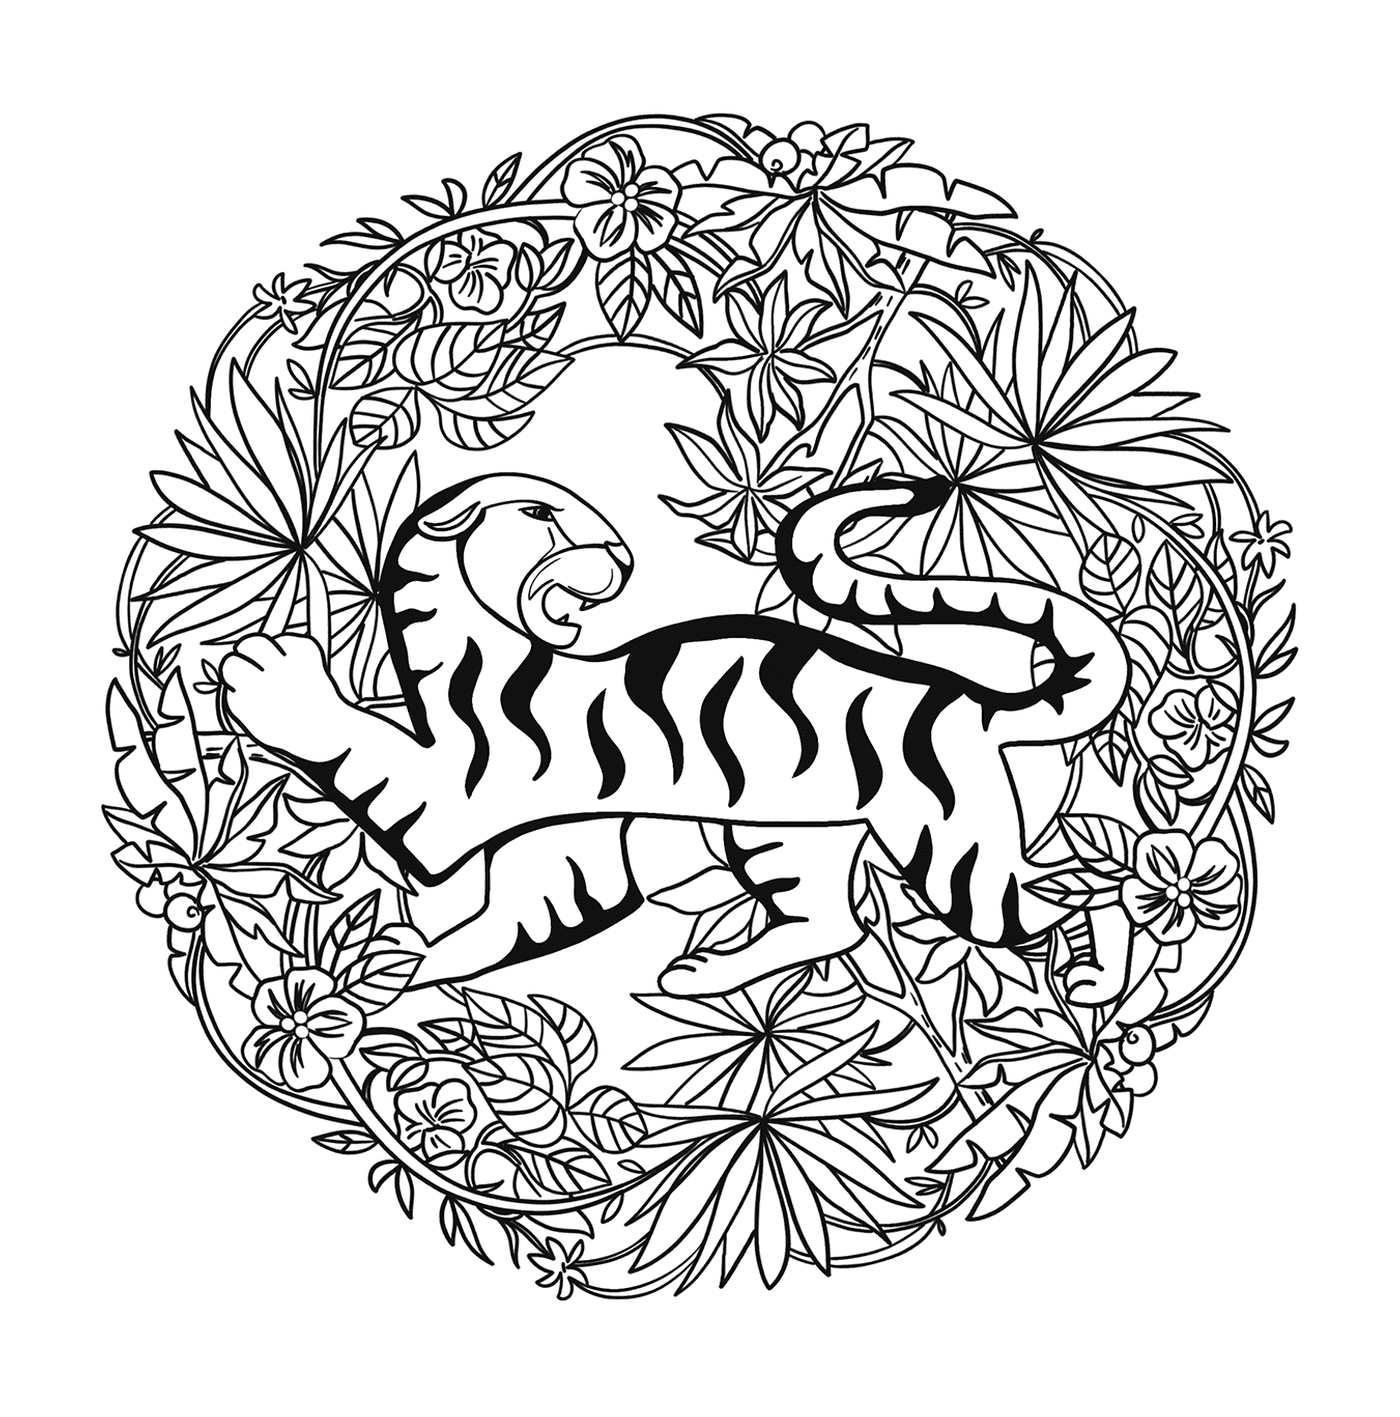  Tiger in einer Krone 